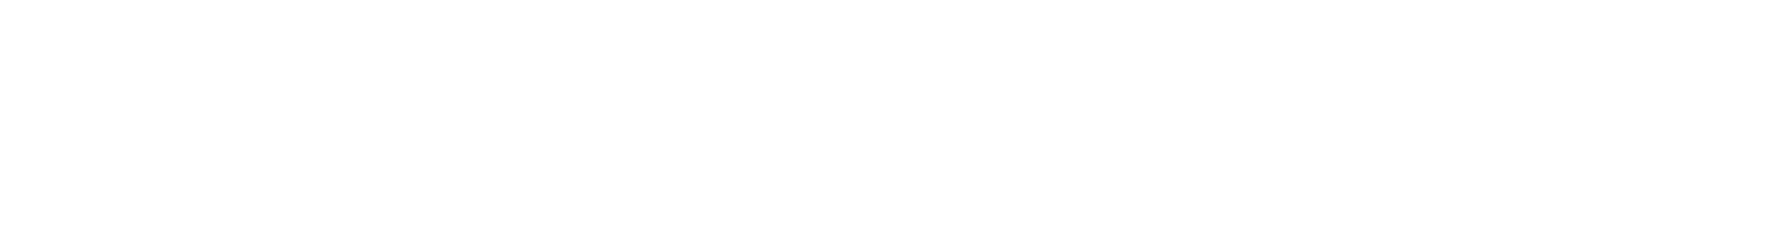 falconer_logo